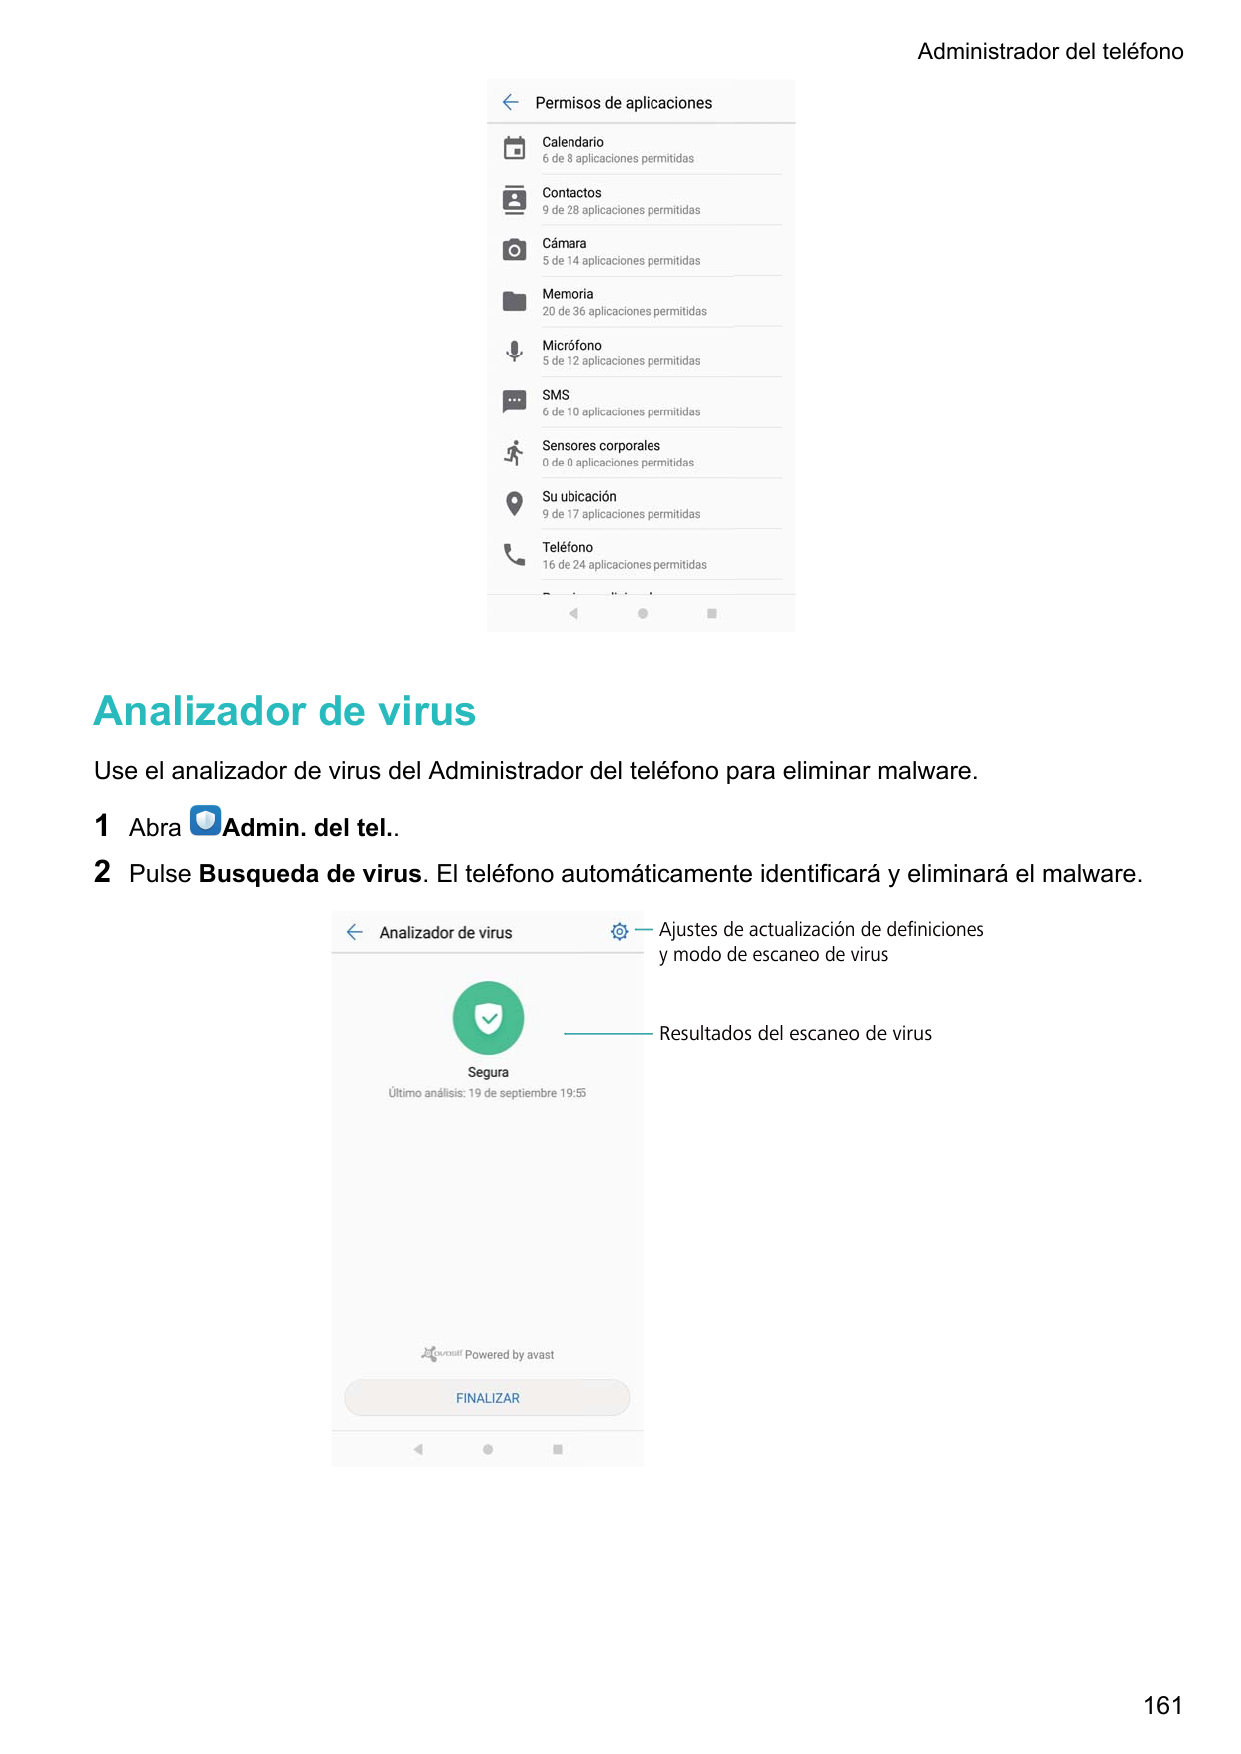 Administrador del teléfonoAnalizador de virusUse el analizador de virus del Administrador del teléfono para eliminar malware.12A